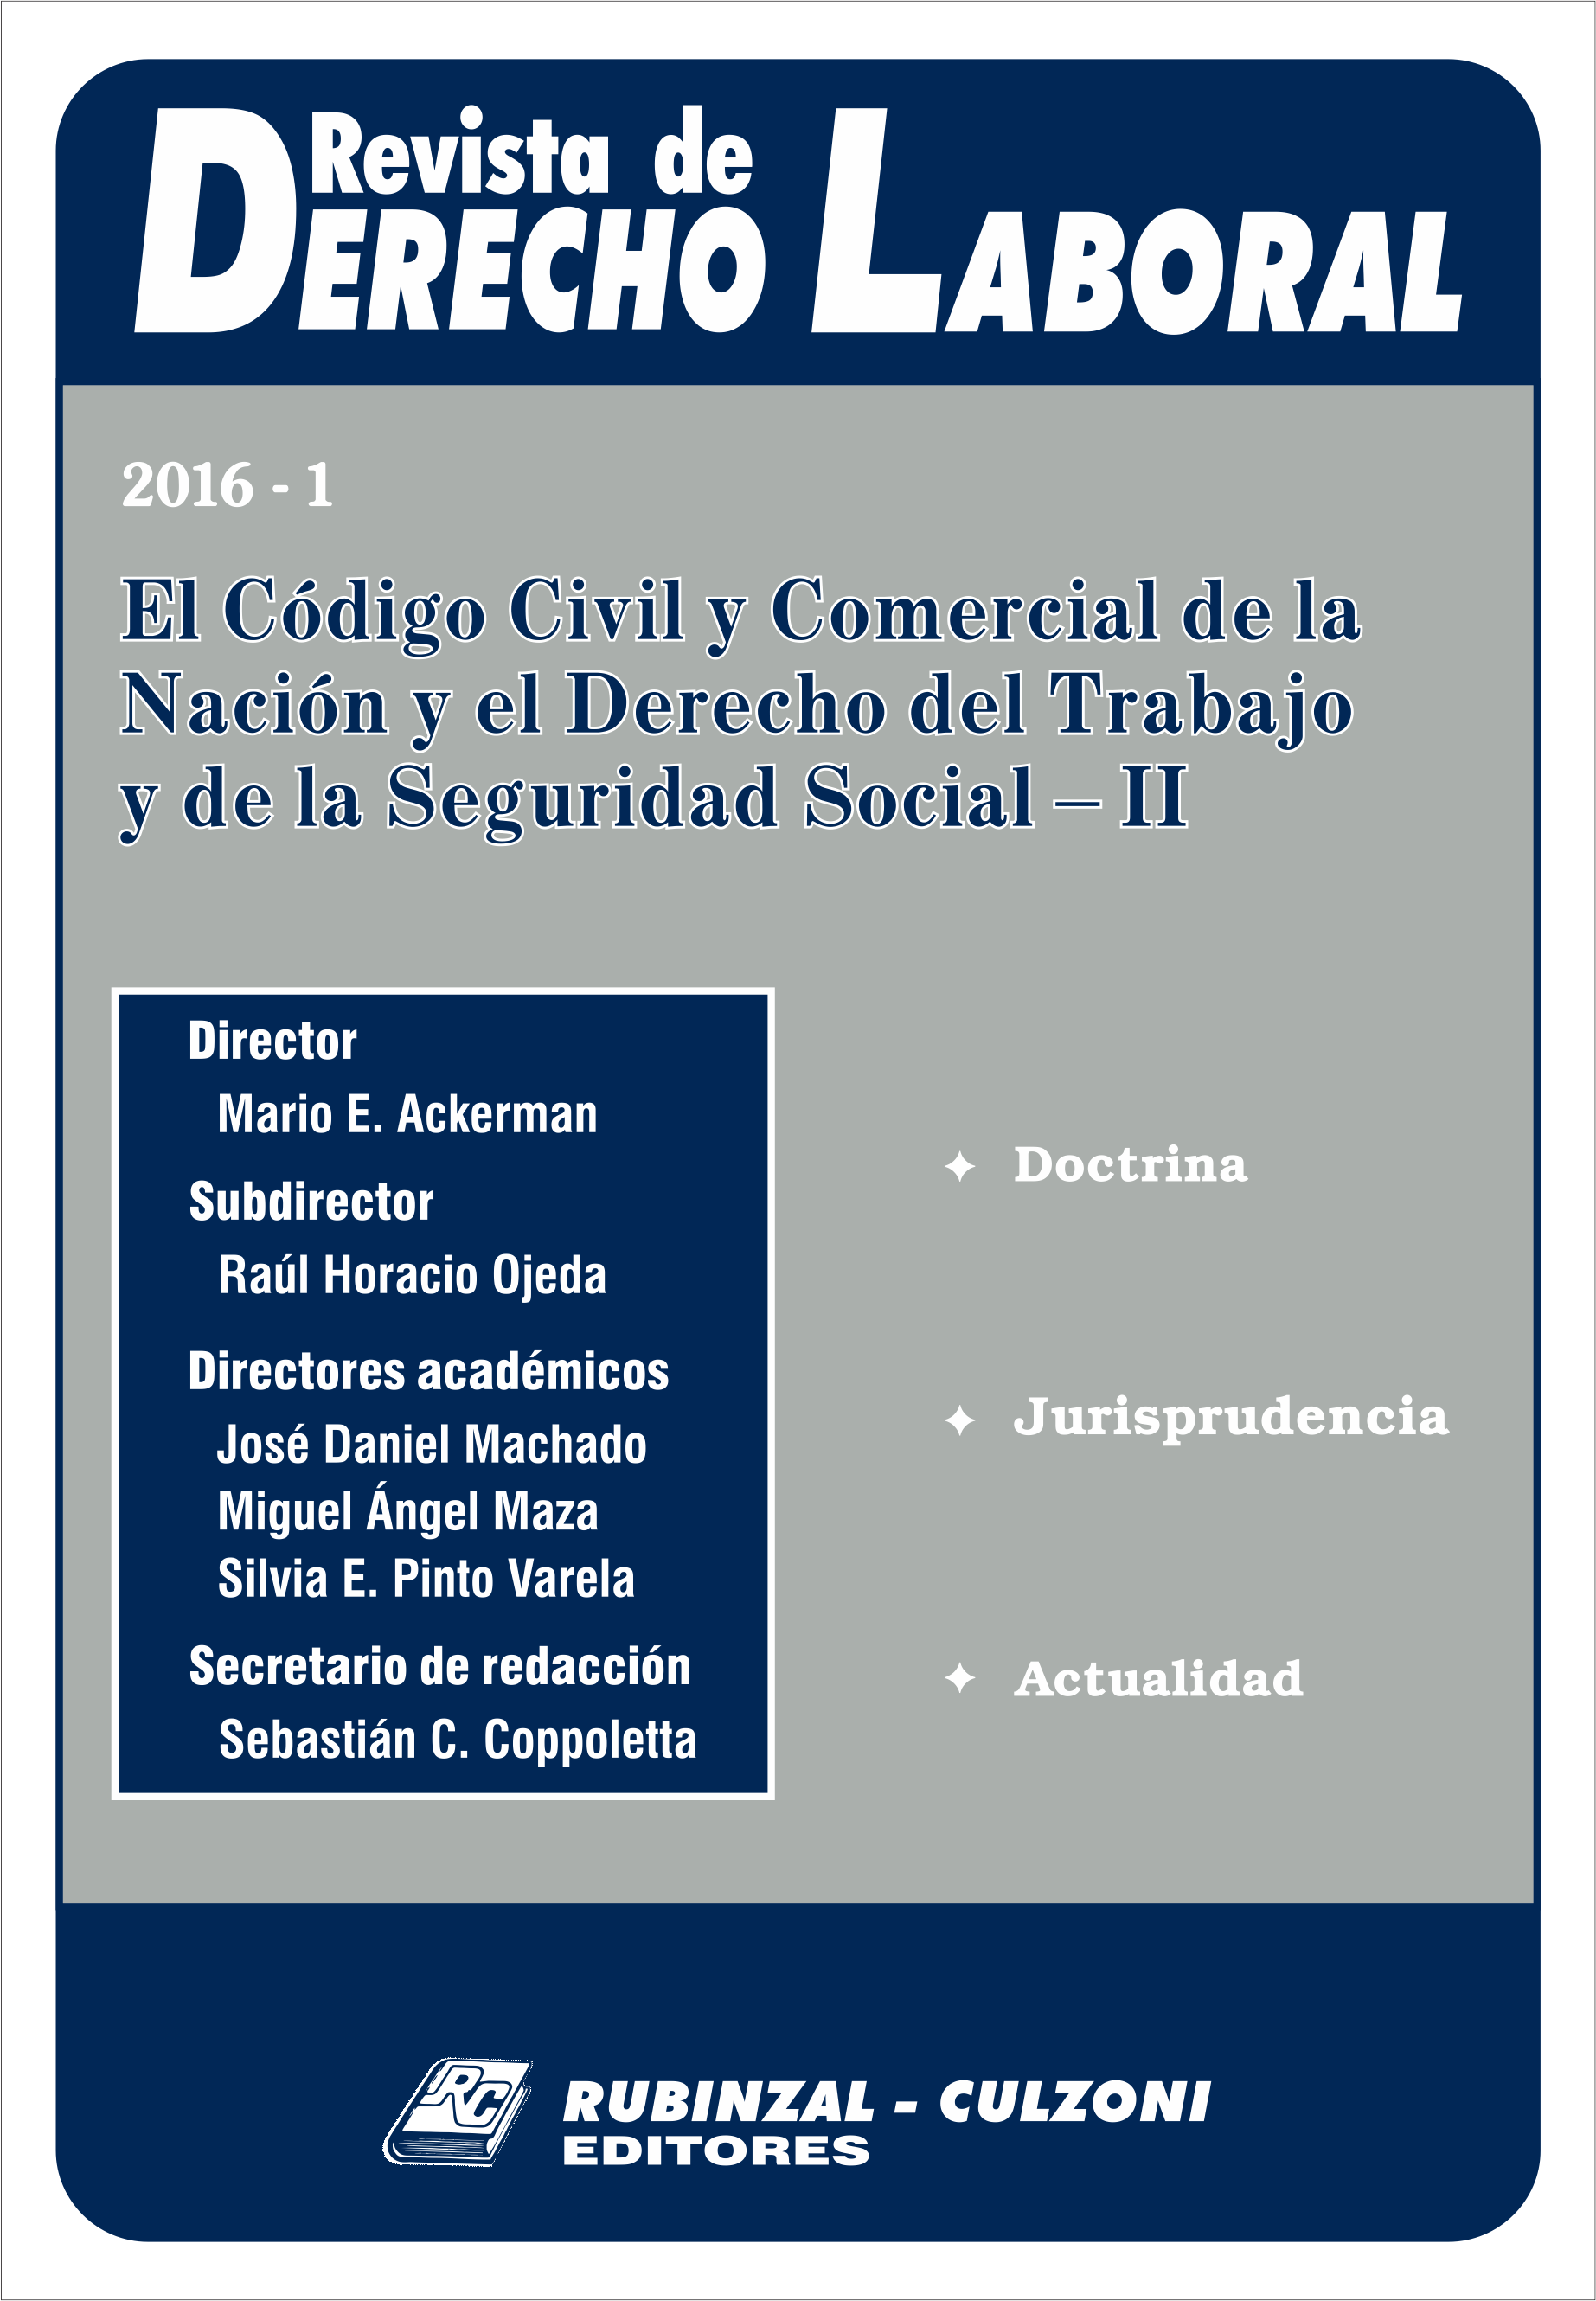 Revista de Derecho Laboral - El Código Civil y Comercial de la Nación y el Derecho del Trabajo y de la Seguridad Social - II